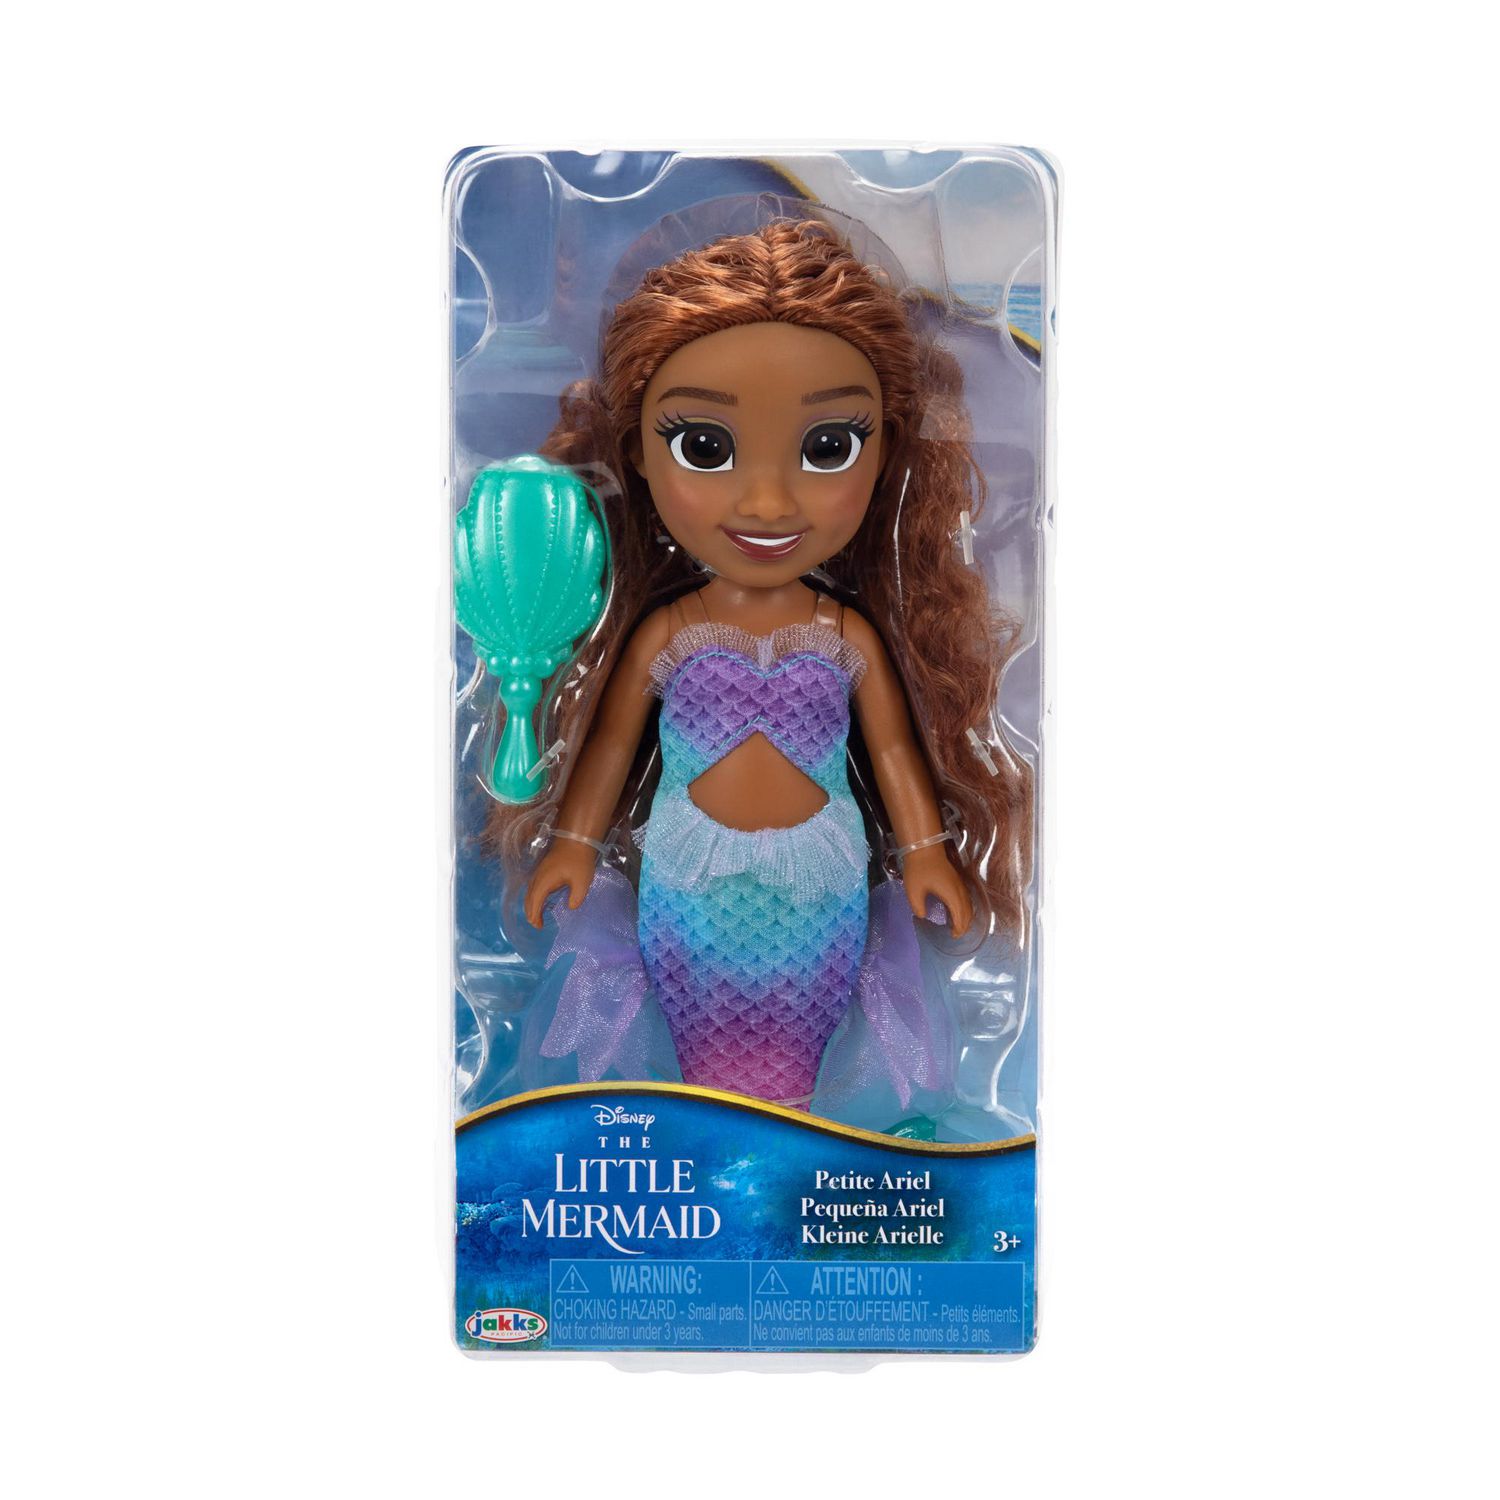 Ariel the Little Mermaid or Skipper Barbie Doll Panties Swim Suit Bottoms  Green